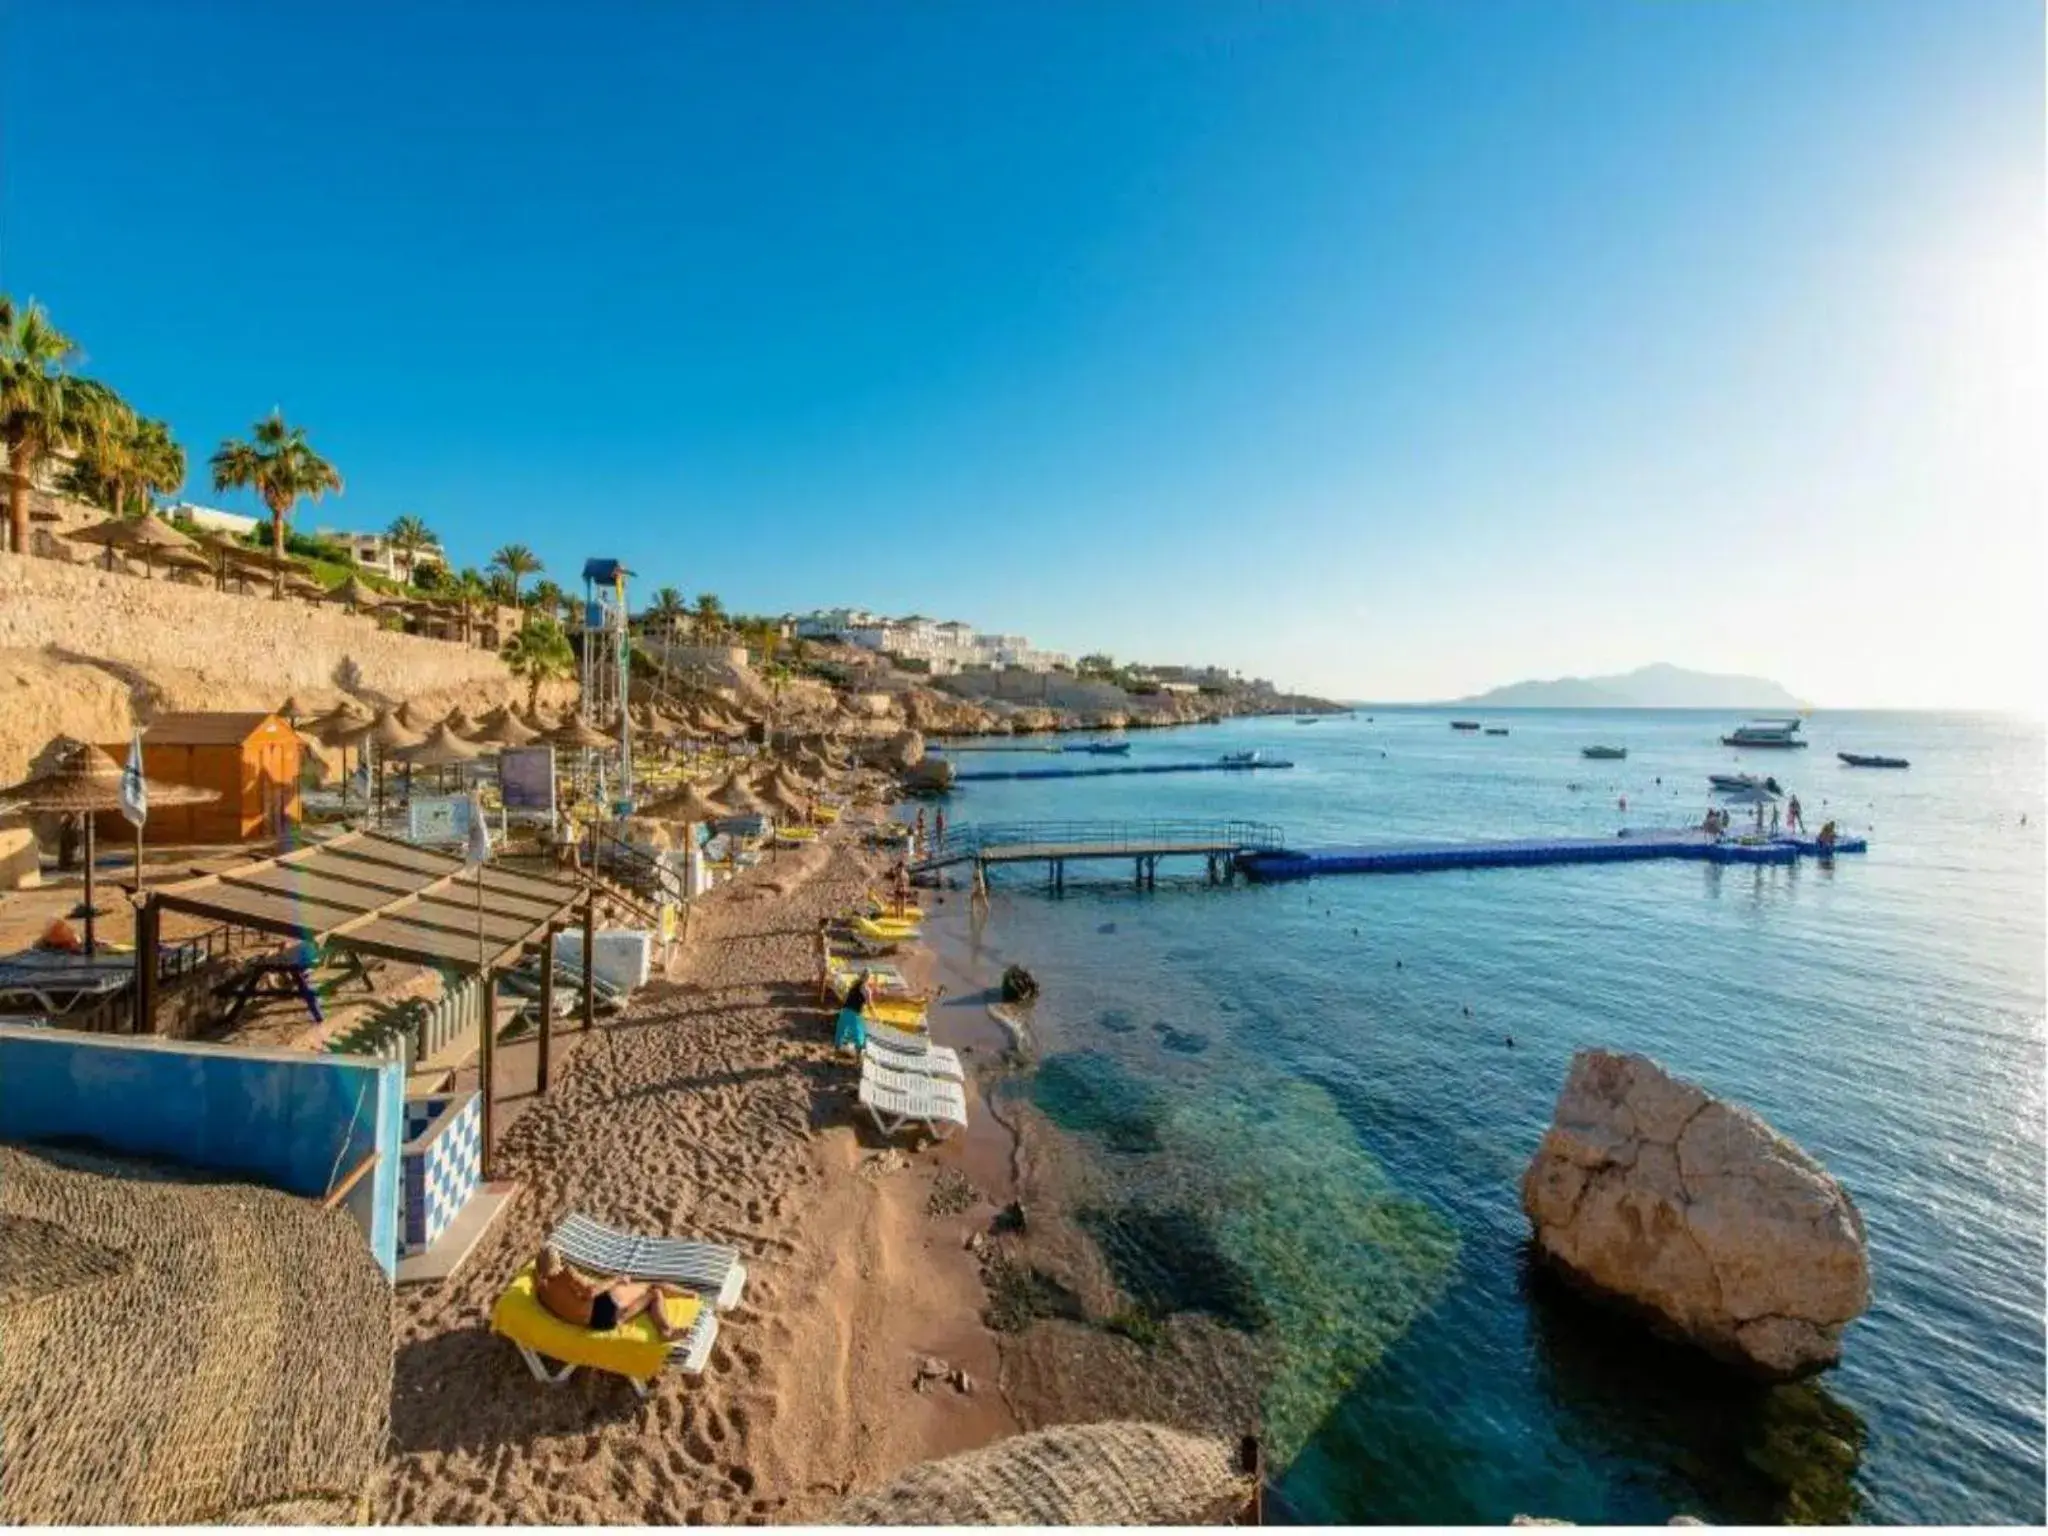 Area and facilities, Beach in Concorde El Salam Sharm El Sheikh Sport Hotel